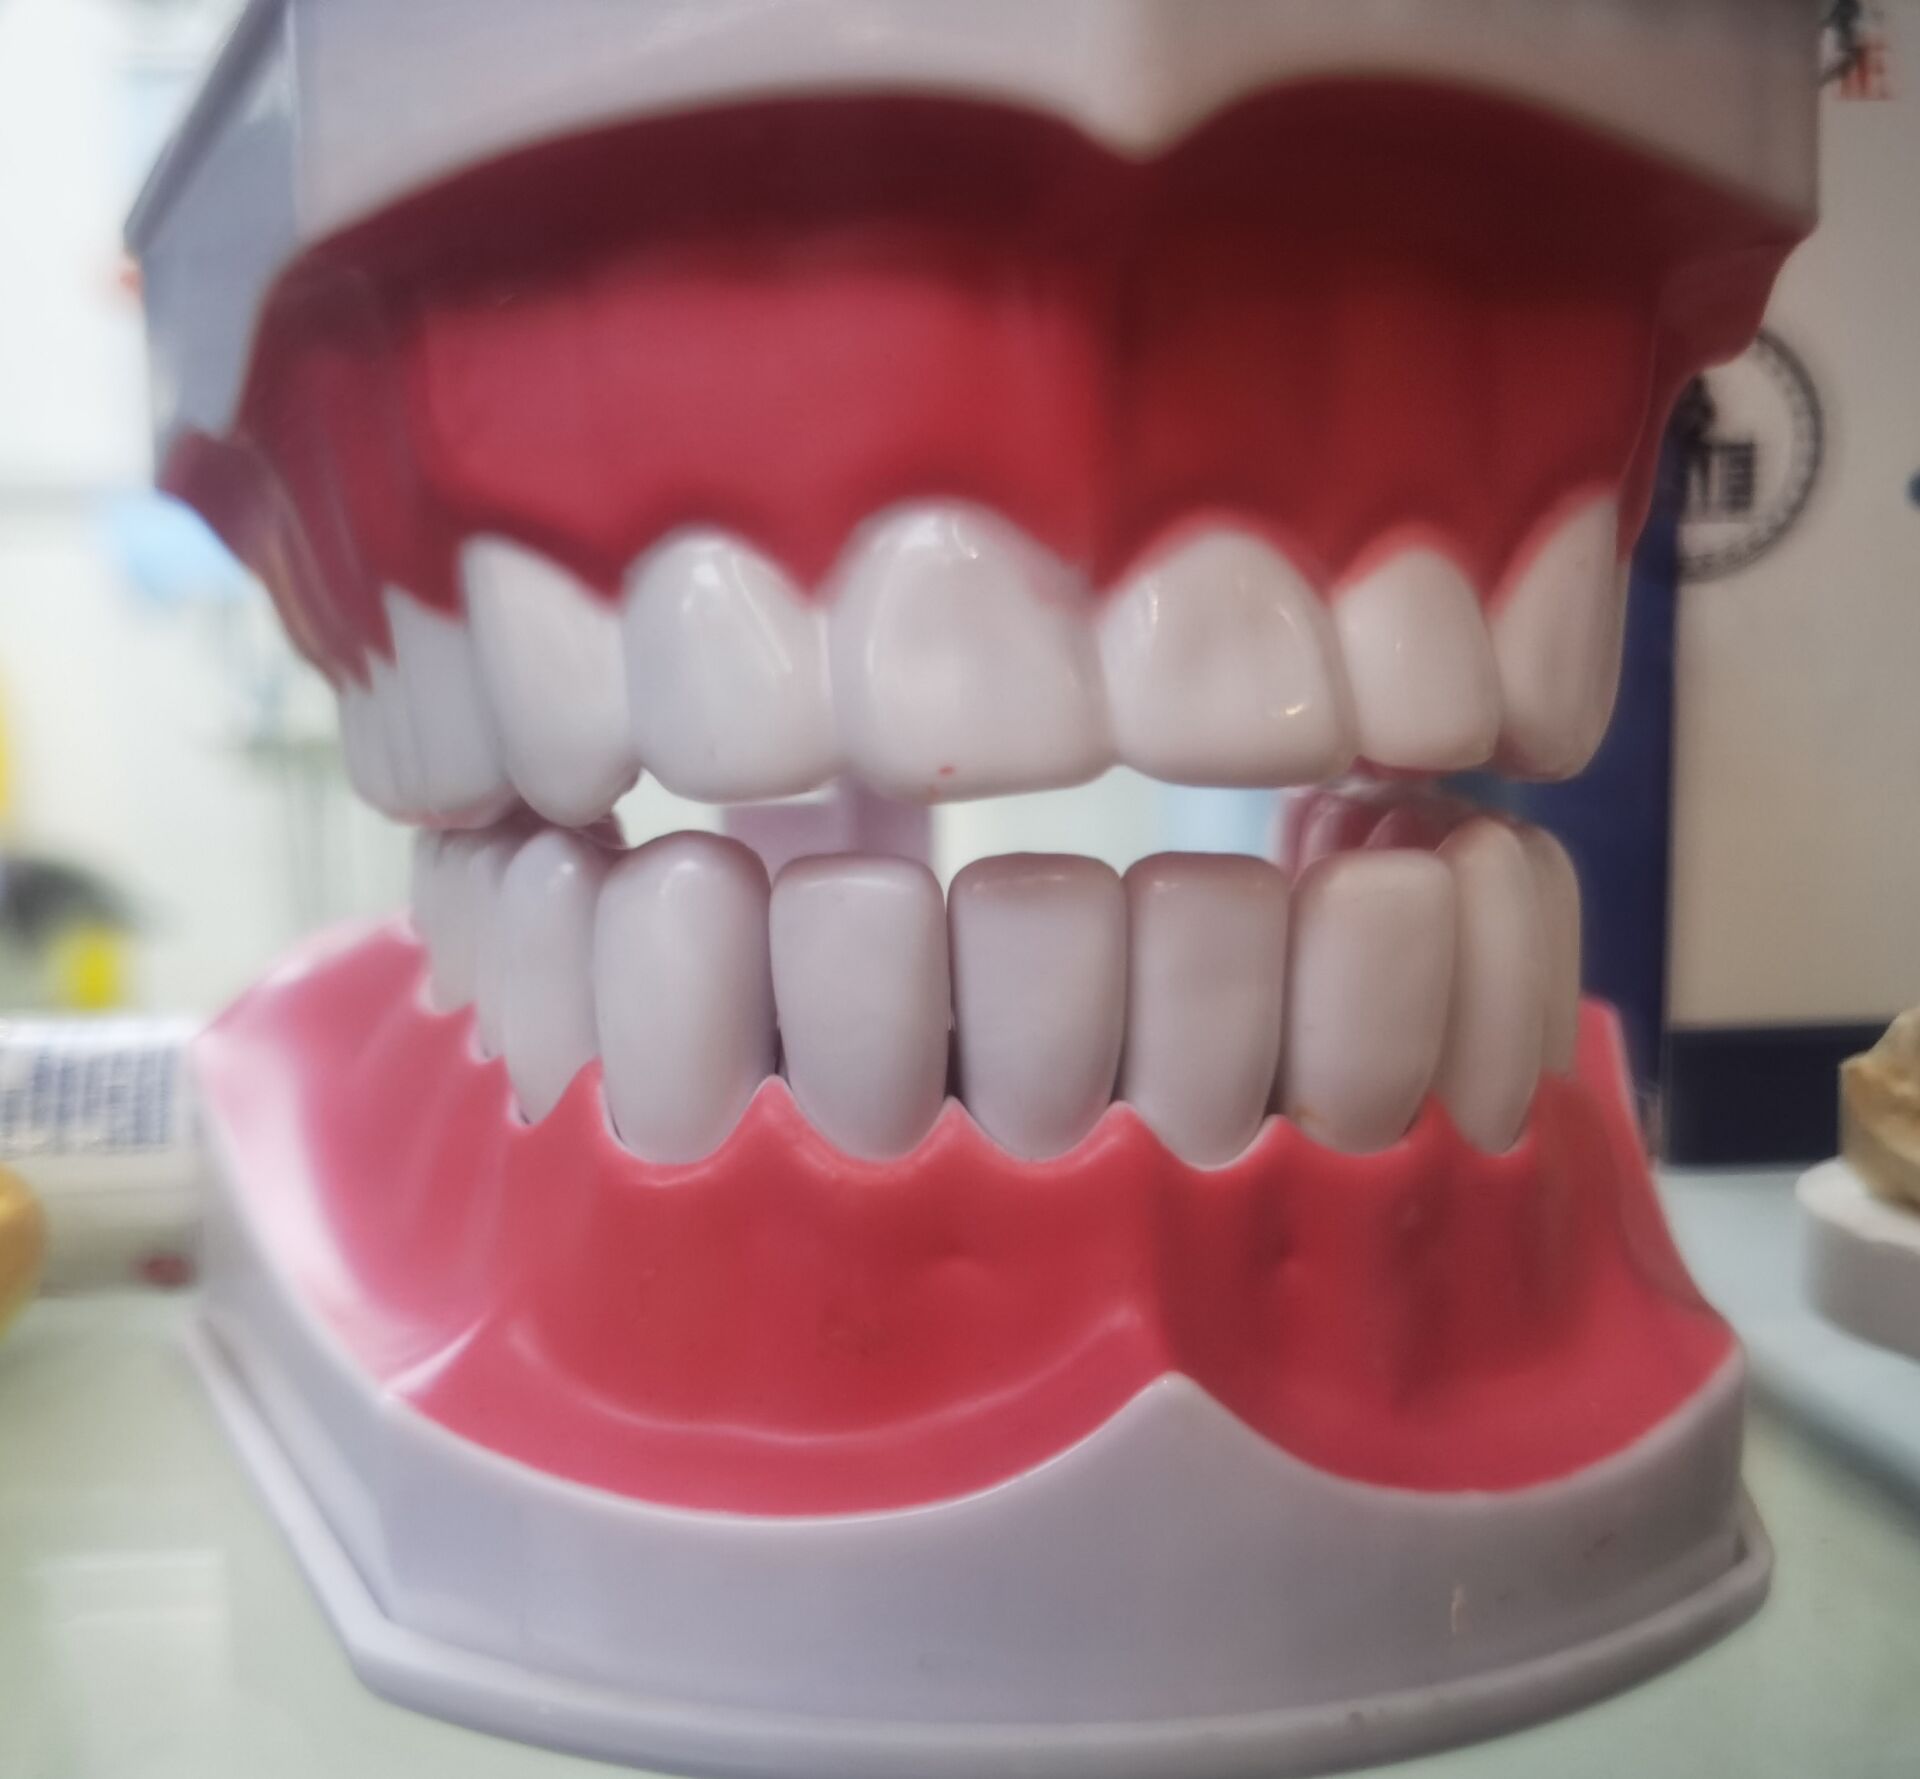  洁牙会让牙缝增大吗？洁牙是怎么一回事？多久时间洁牙一次？